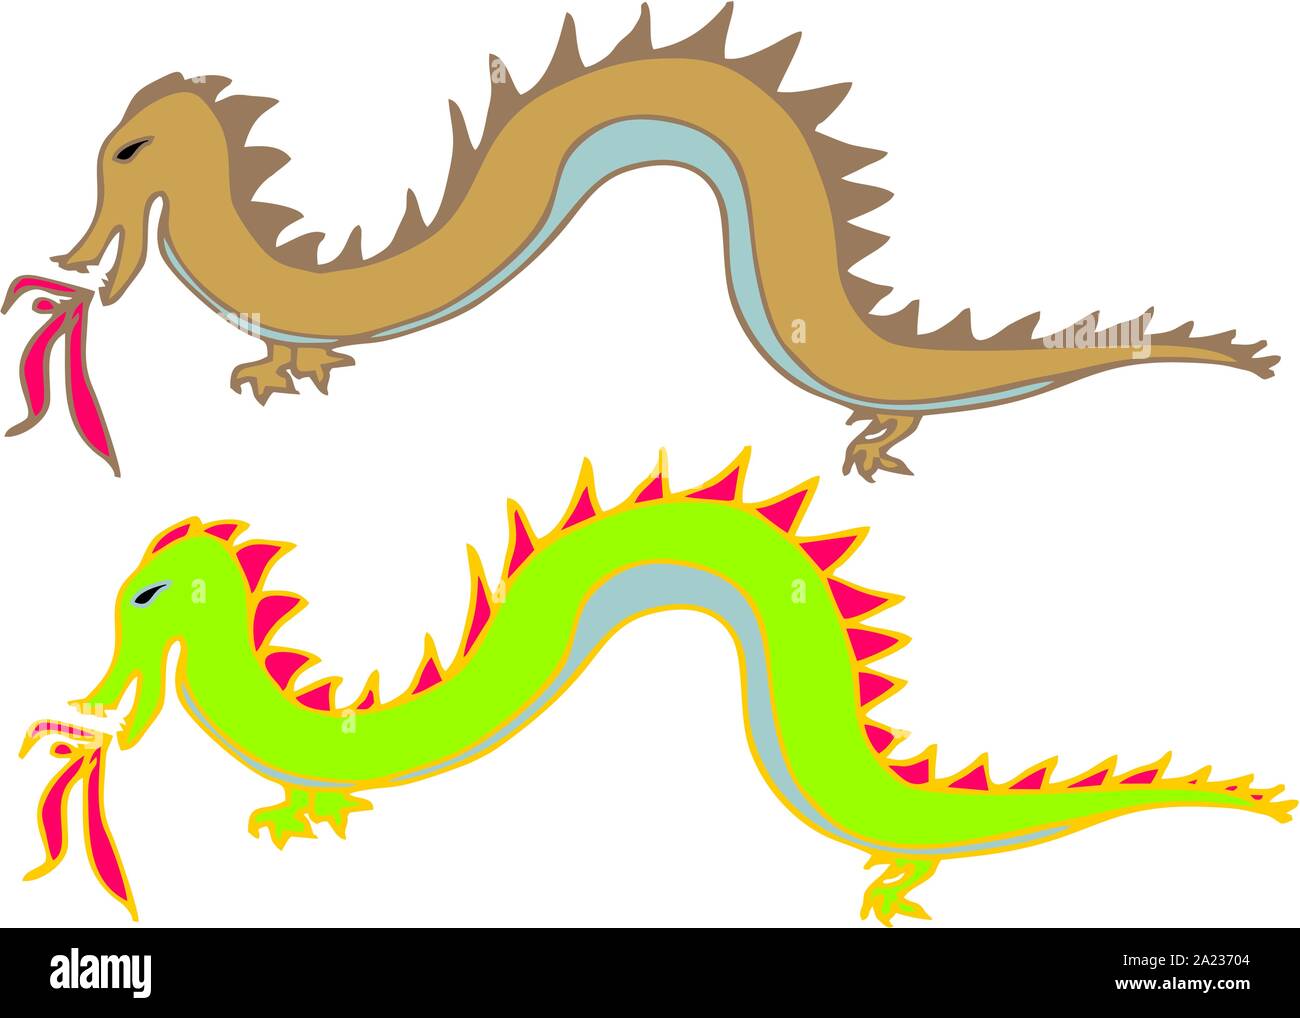 Dragons chinois stylisé et coloré ou rouge et or dragons chinois stylisé de l'or, argent et rouge couleur du dégradé Illustration de Vecteur